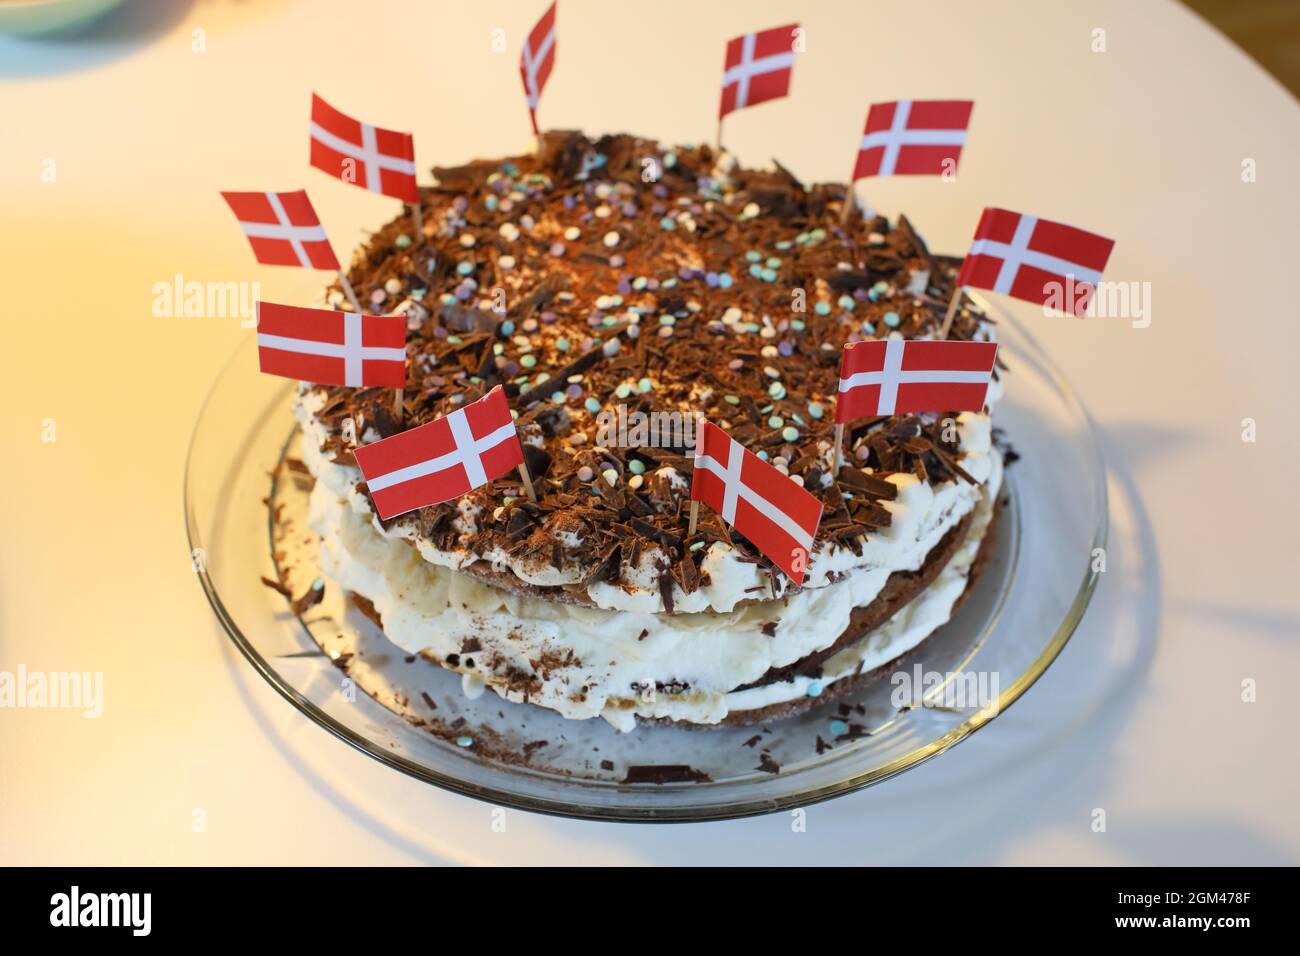 Danish birthday cake Stock Photo